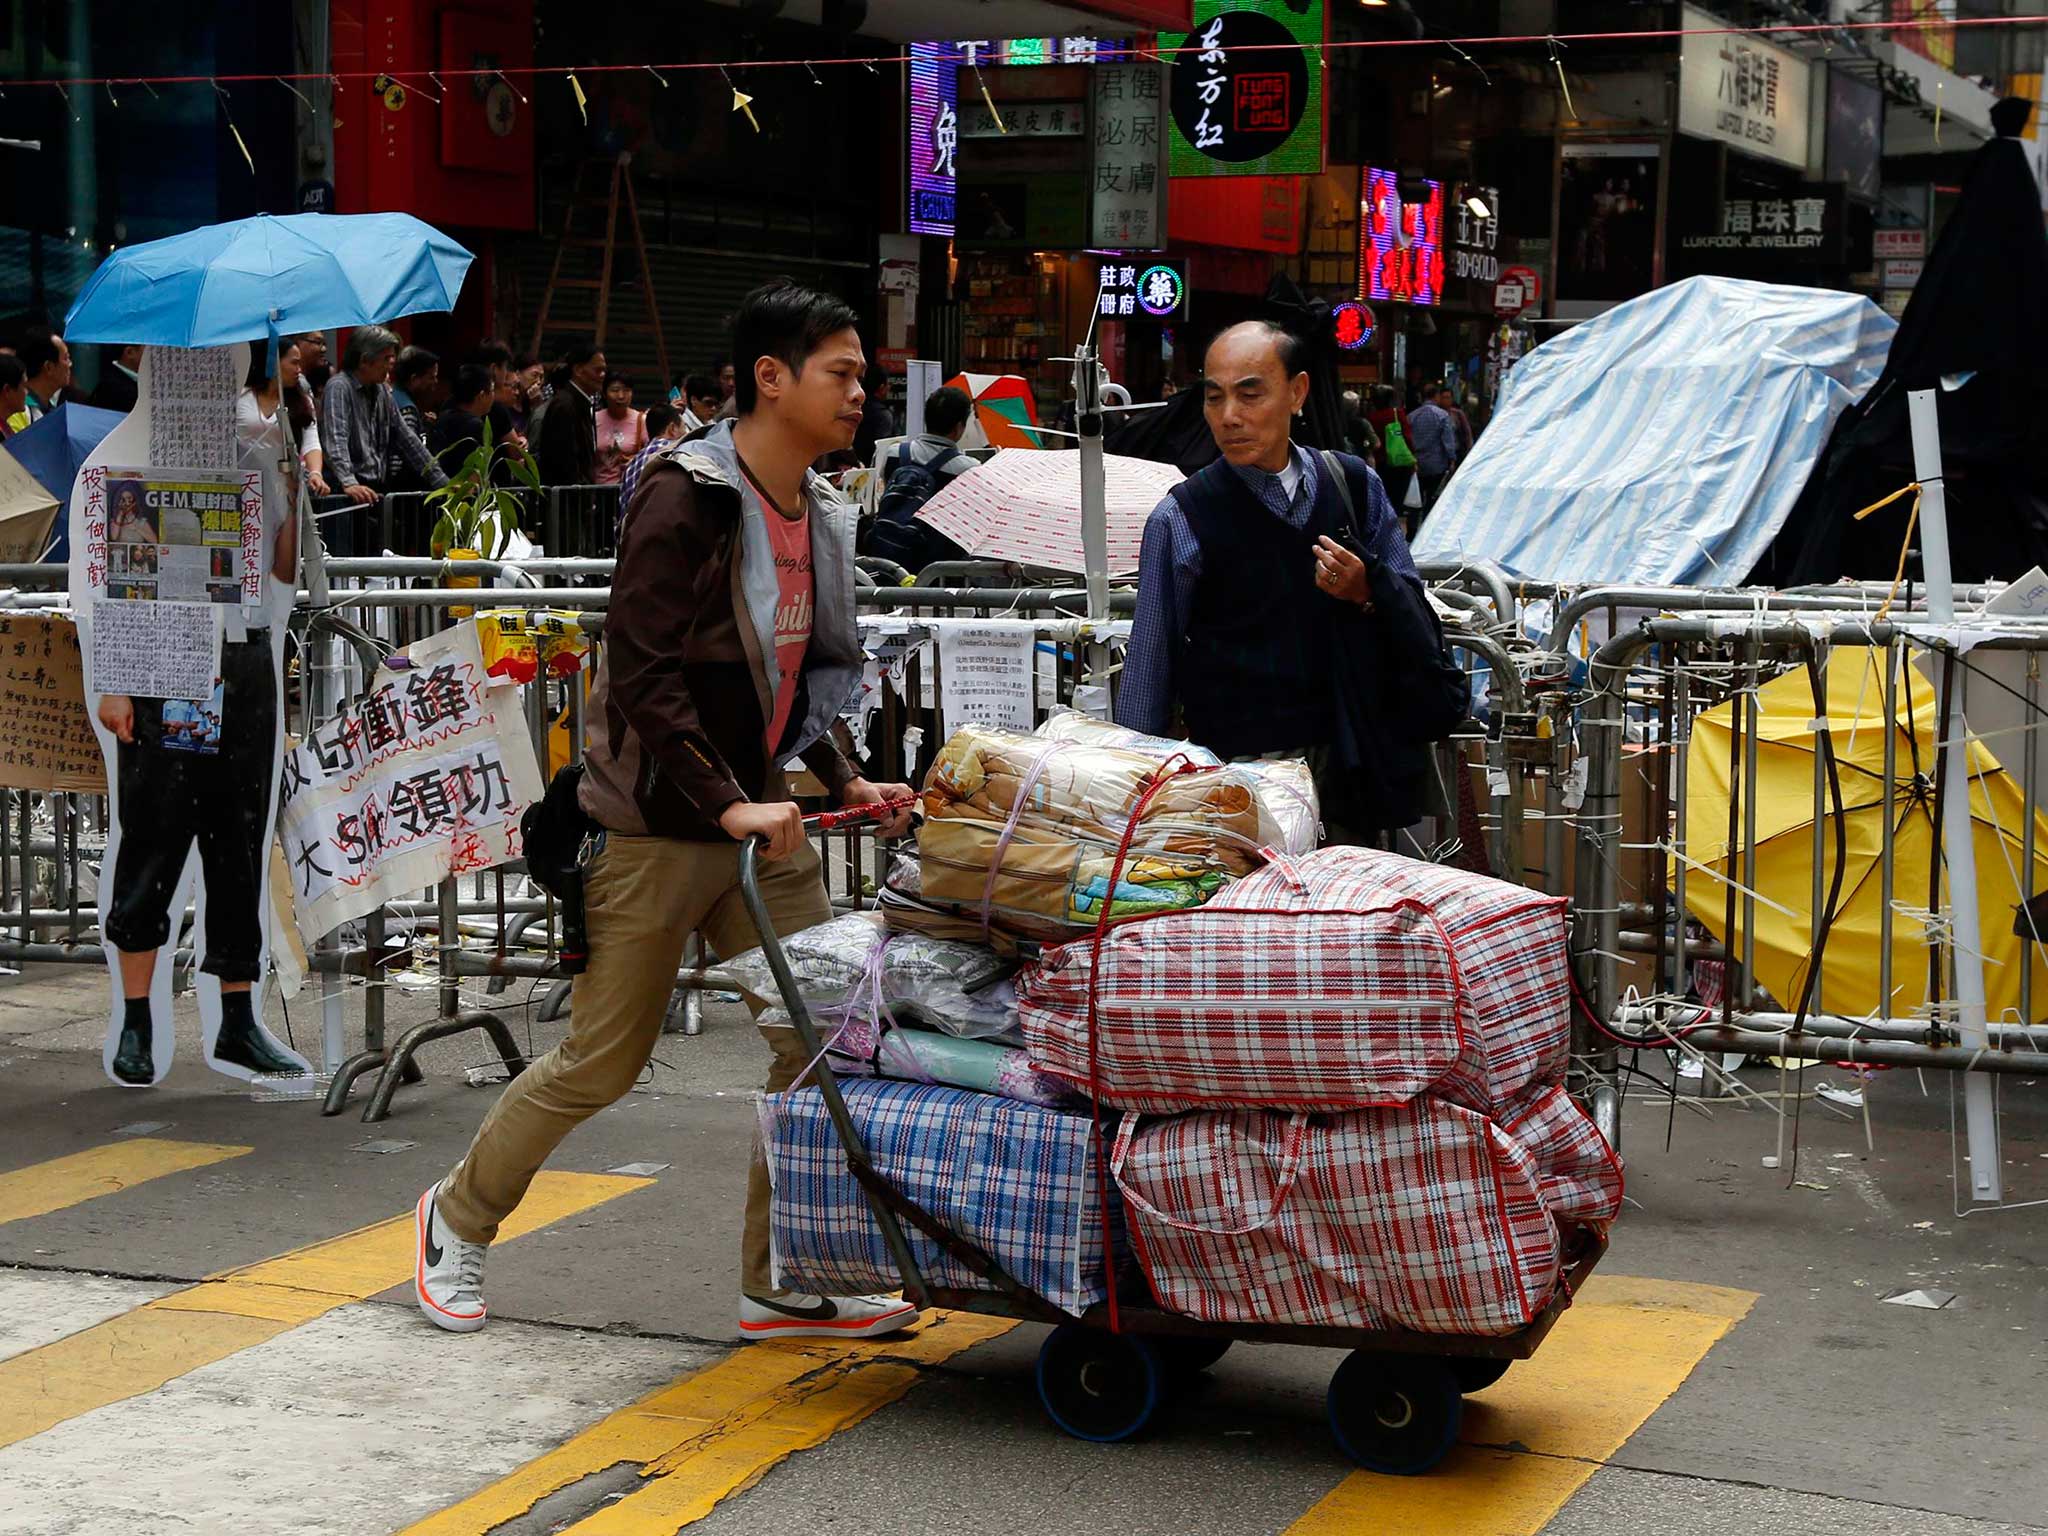 A Hong Kong pro-democracy transports supplies